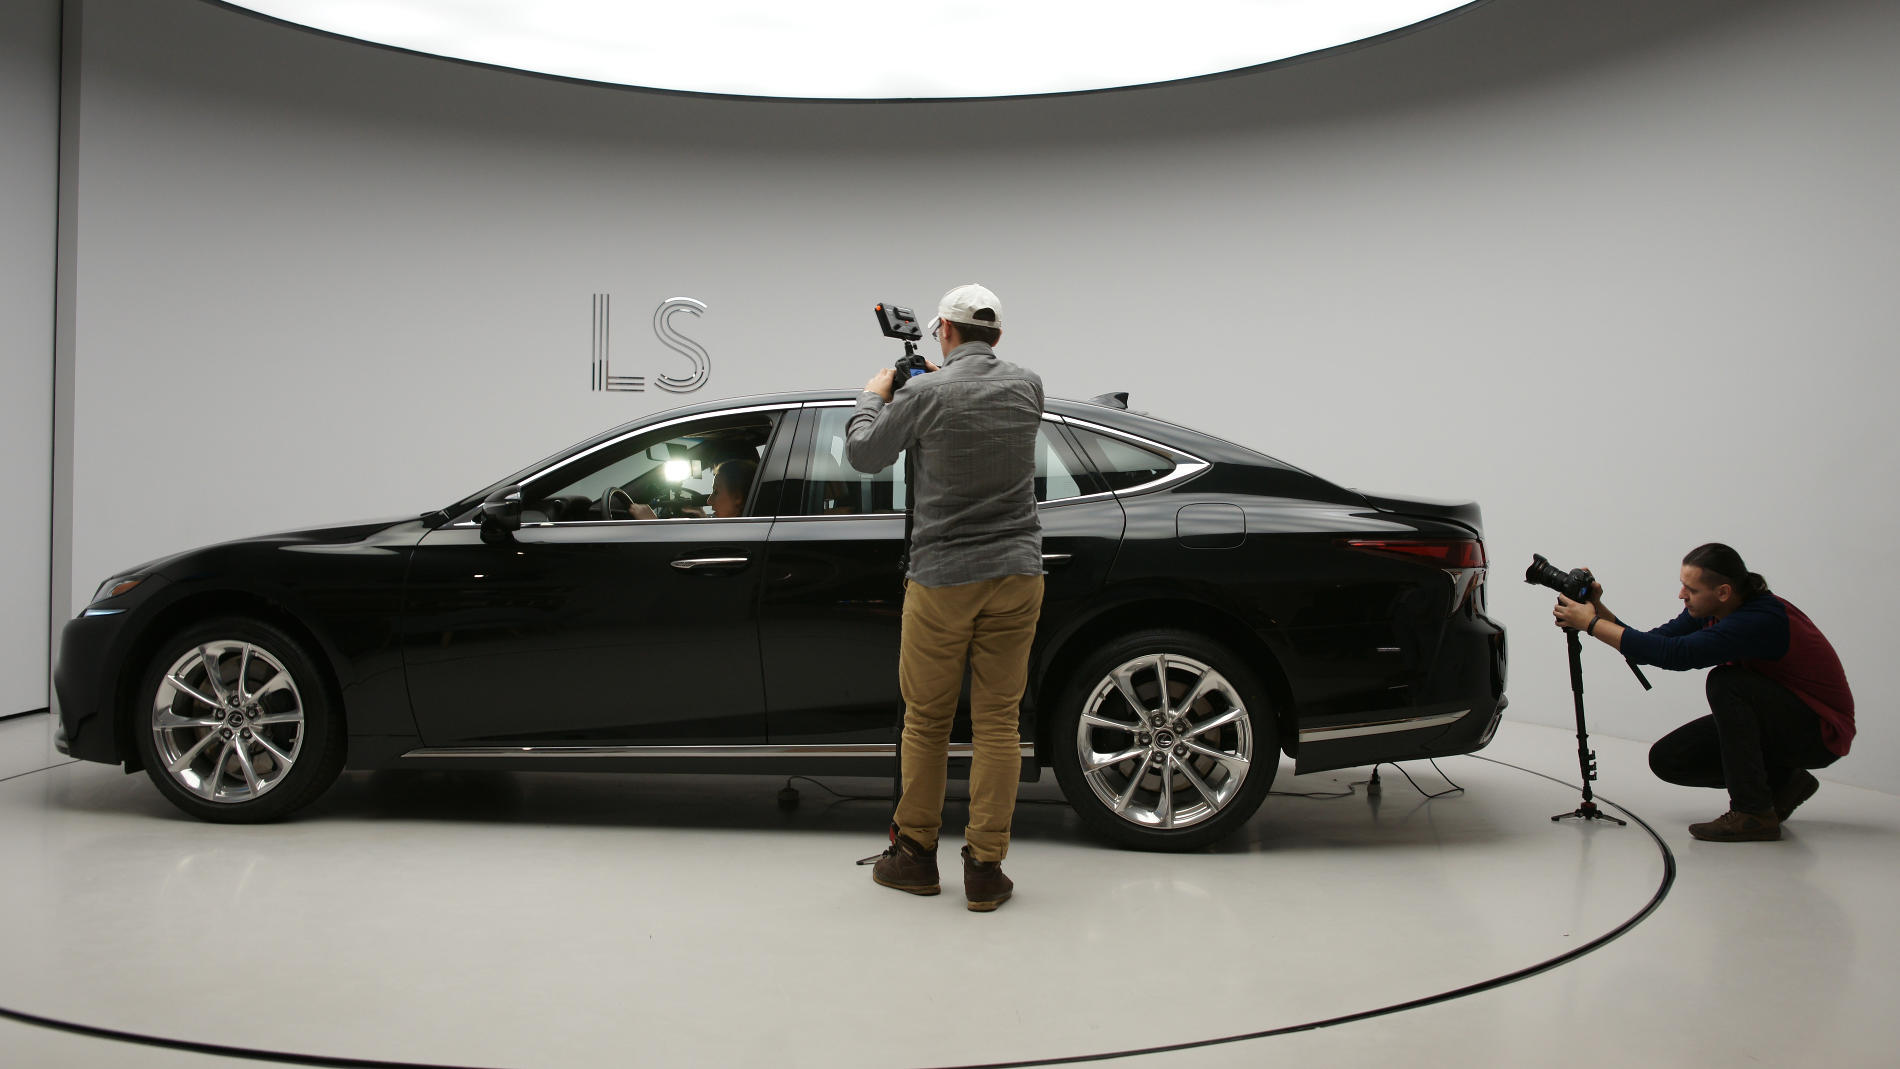 Ажиотаж на презентации нового Lexus LS был велик без преувеличения